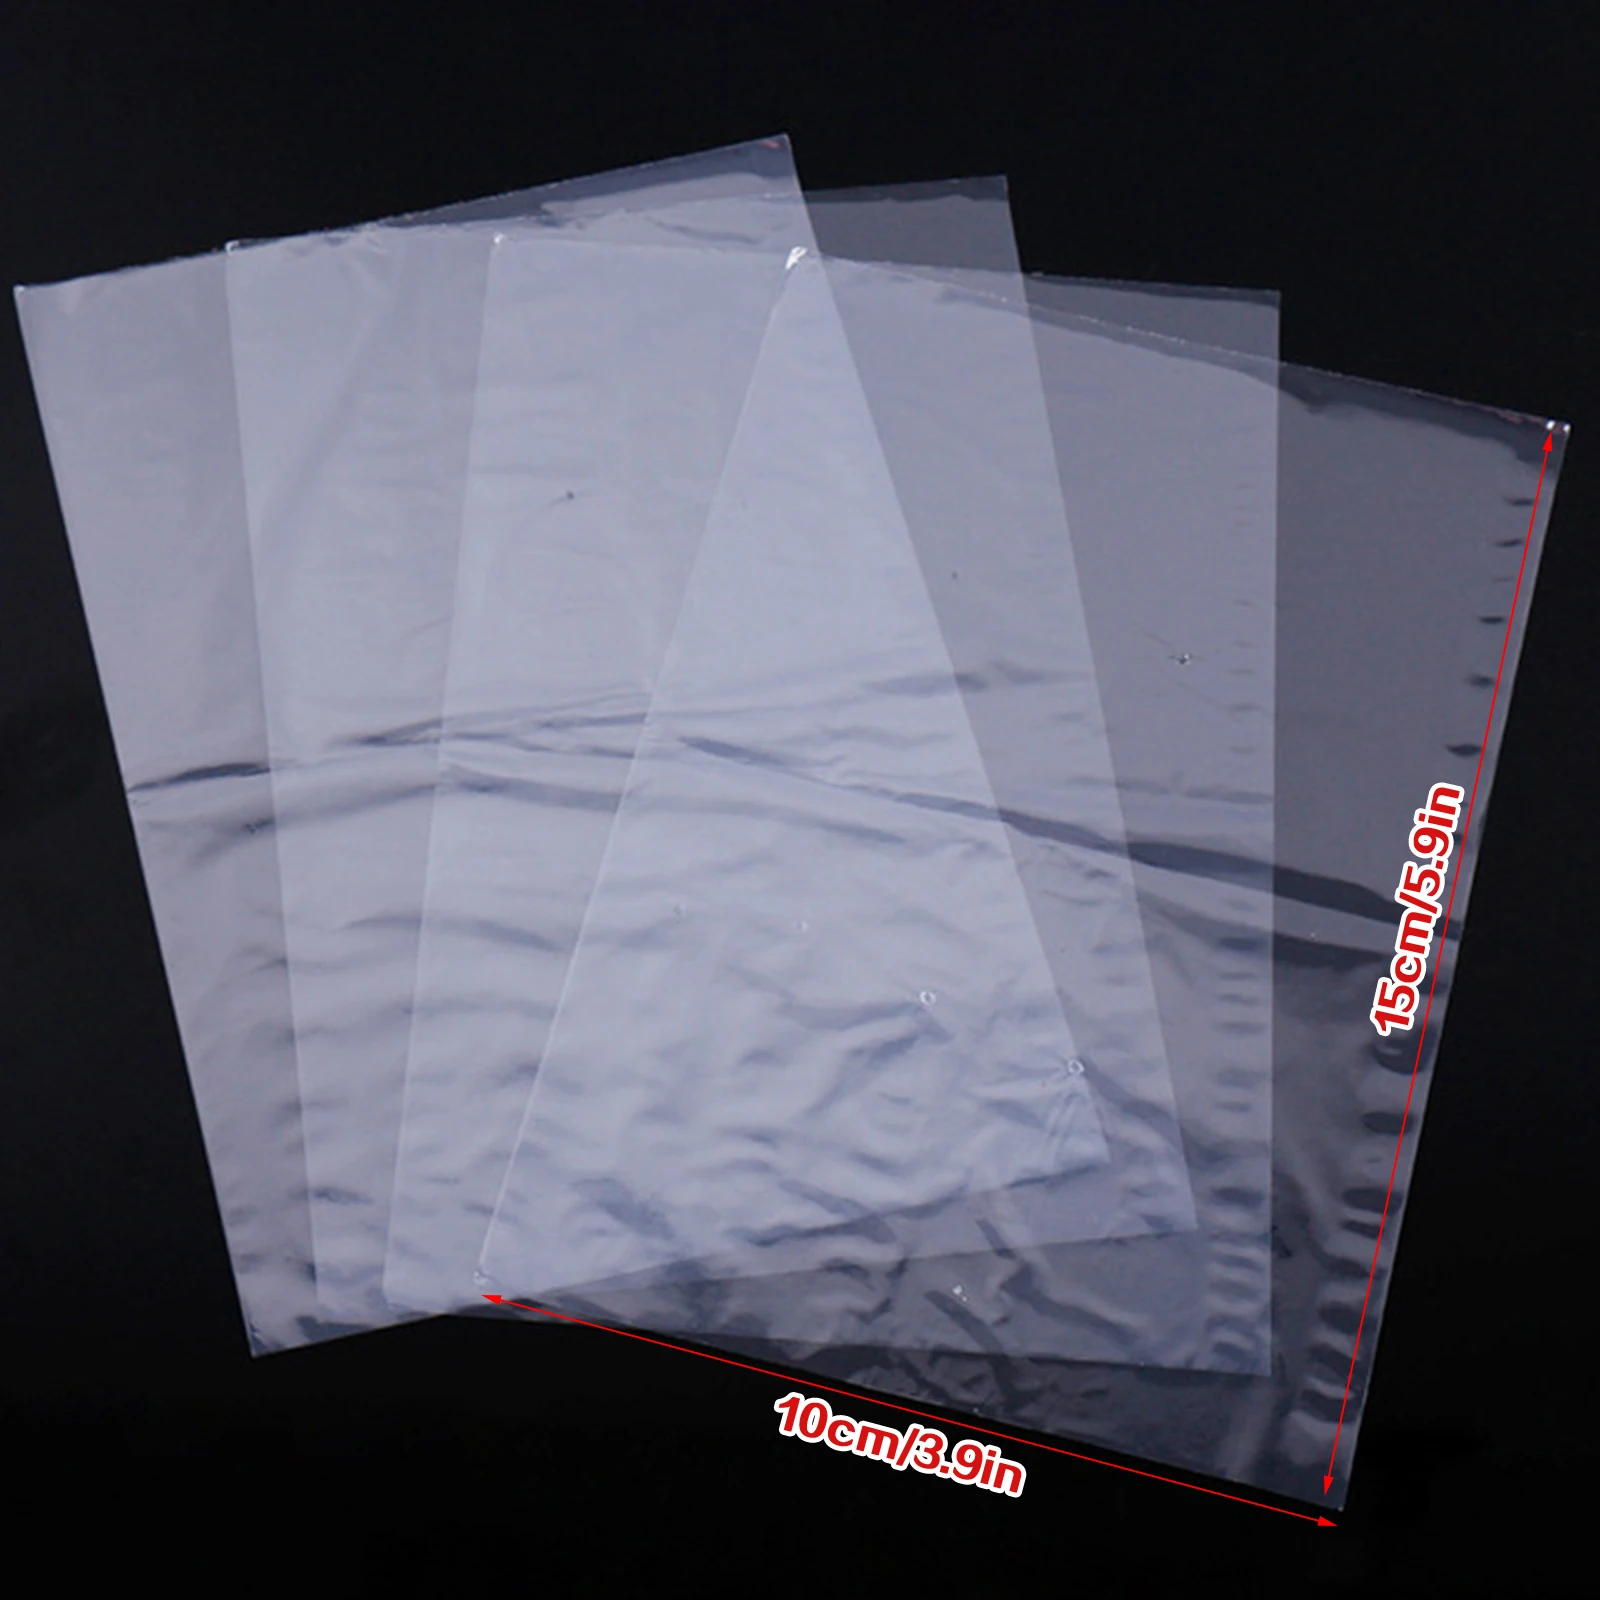 200X Shrink Wrap Bags Waterproof Heat Bag Soaps Bath Bombs DIY Crafts Seal Film 